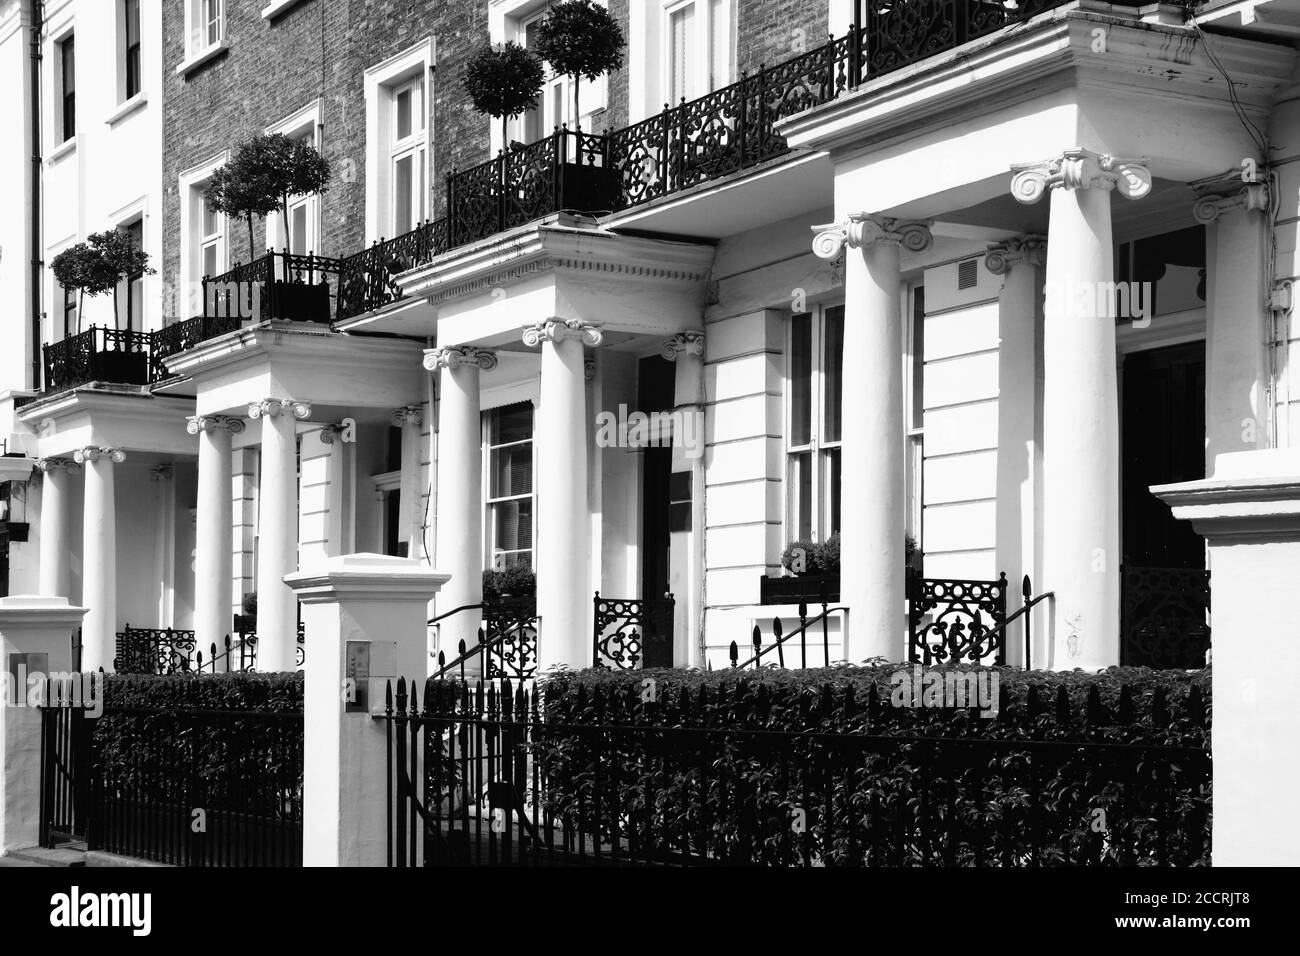 Image en noir et blanc d'une Régence géorgienne à l'ancienne Maisons de ville mitoyennes à l'architecture de bâtiment à Notting Hill Kensington Londres Angleterre Banque D'Images